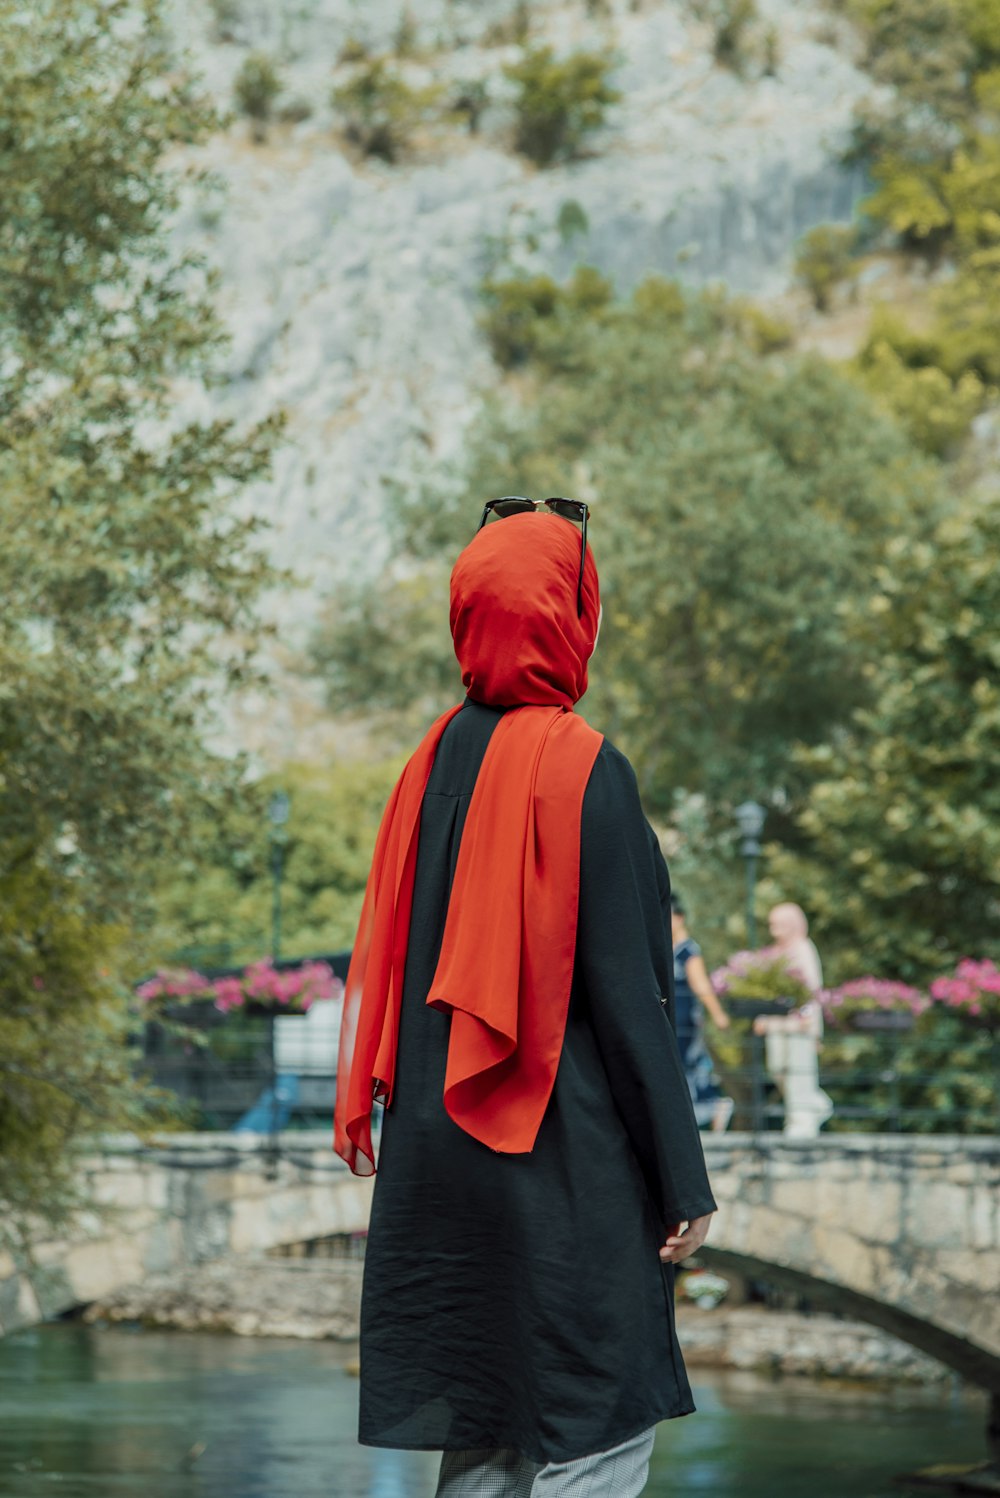 una persona vestida con una túnica negra y una cubierta de cabeza roja de pie frente a un estanque con árboles y